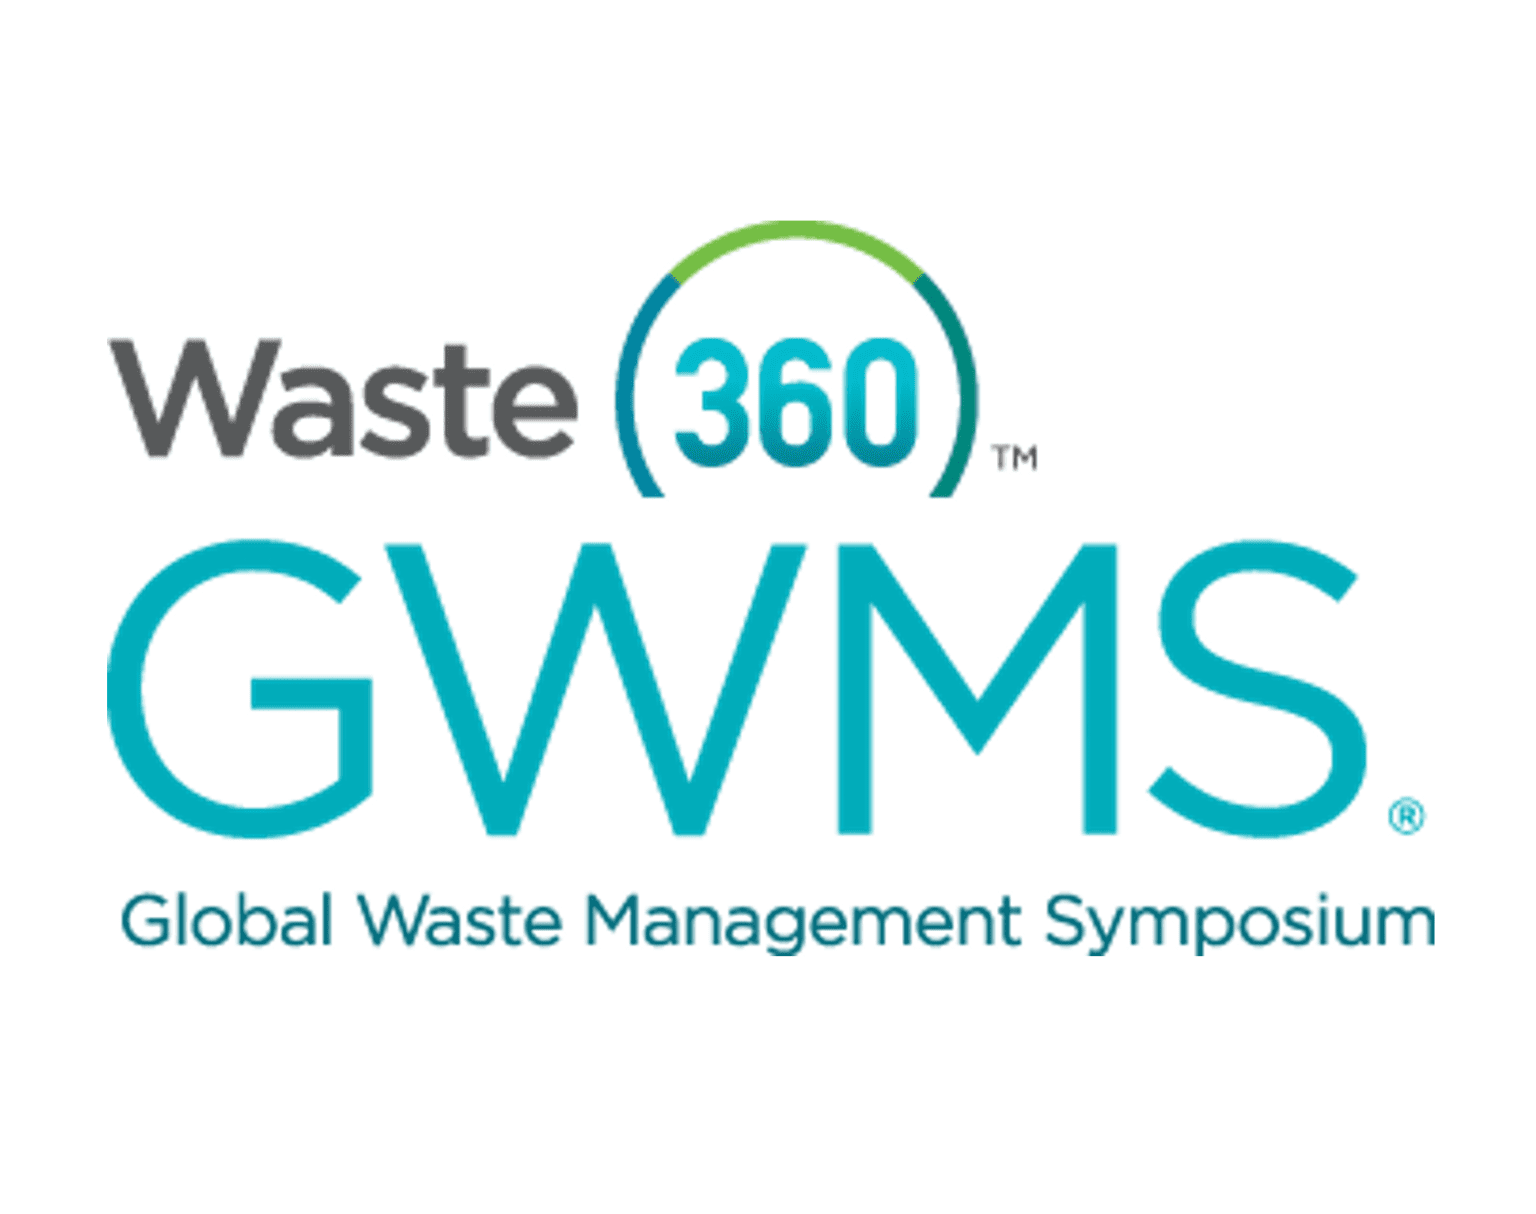 Global waste management symposium